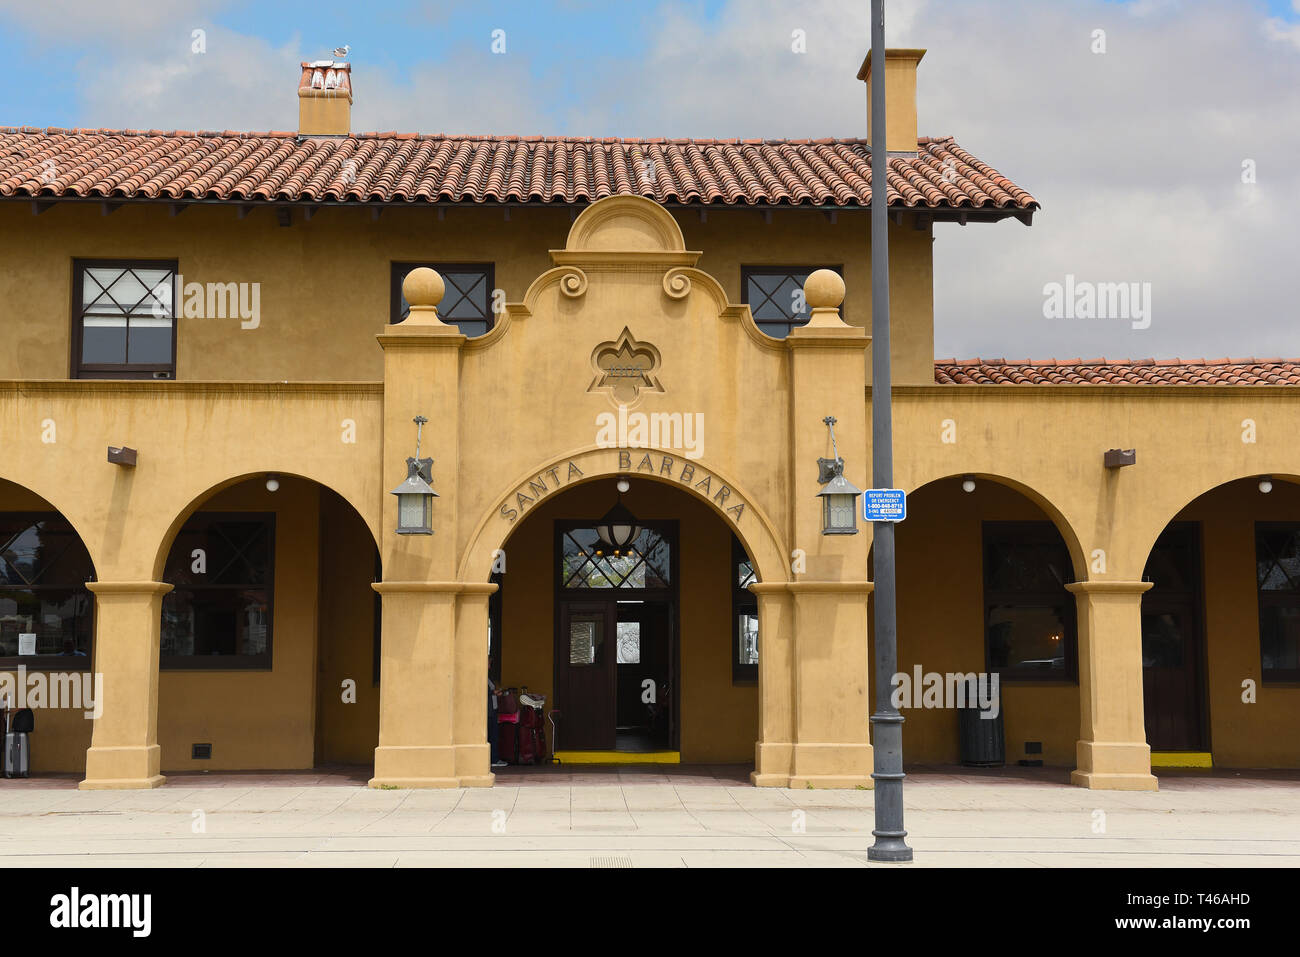 SANTA BARBARA, Kalifornien - 11. APRIL 2019: Amtrak Bahnhof Santa Barbara dient dem Coast Starlight und die Pacific Surfliner. Stockfoto